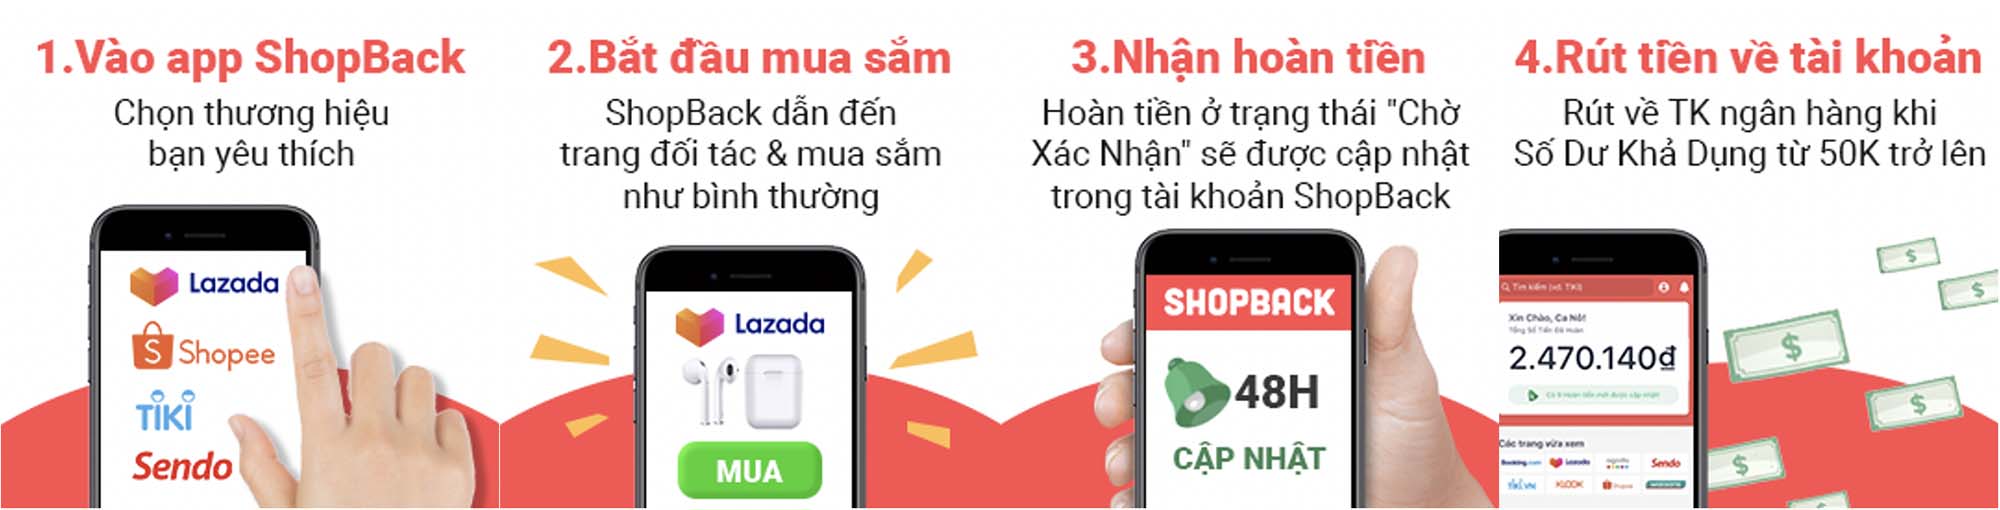 ShopBack - Nền tảng hoàn tiền hàng đầu Châu Á Thái Bình Dương chính thức ra mắt tại Việt Nam